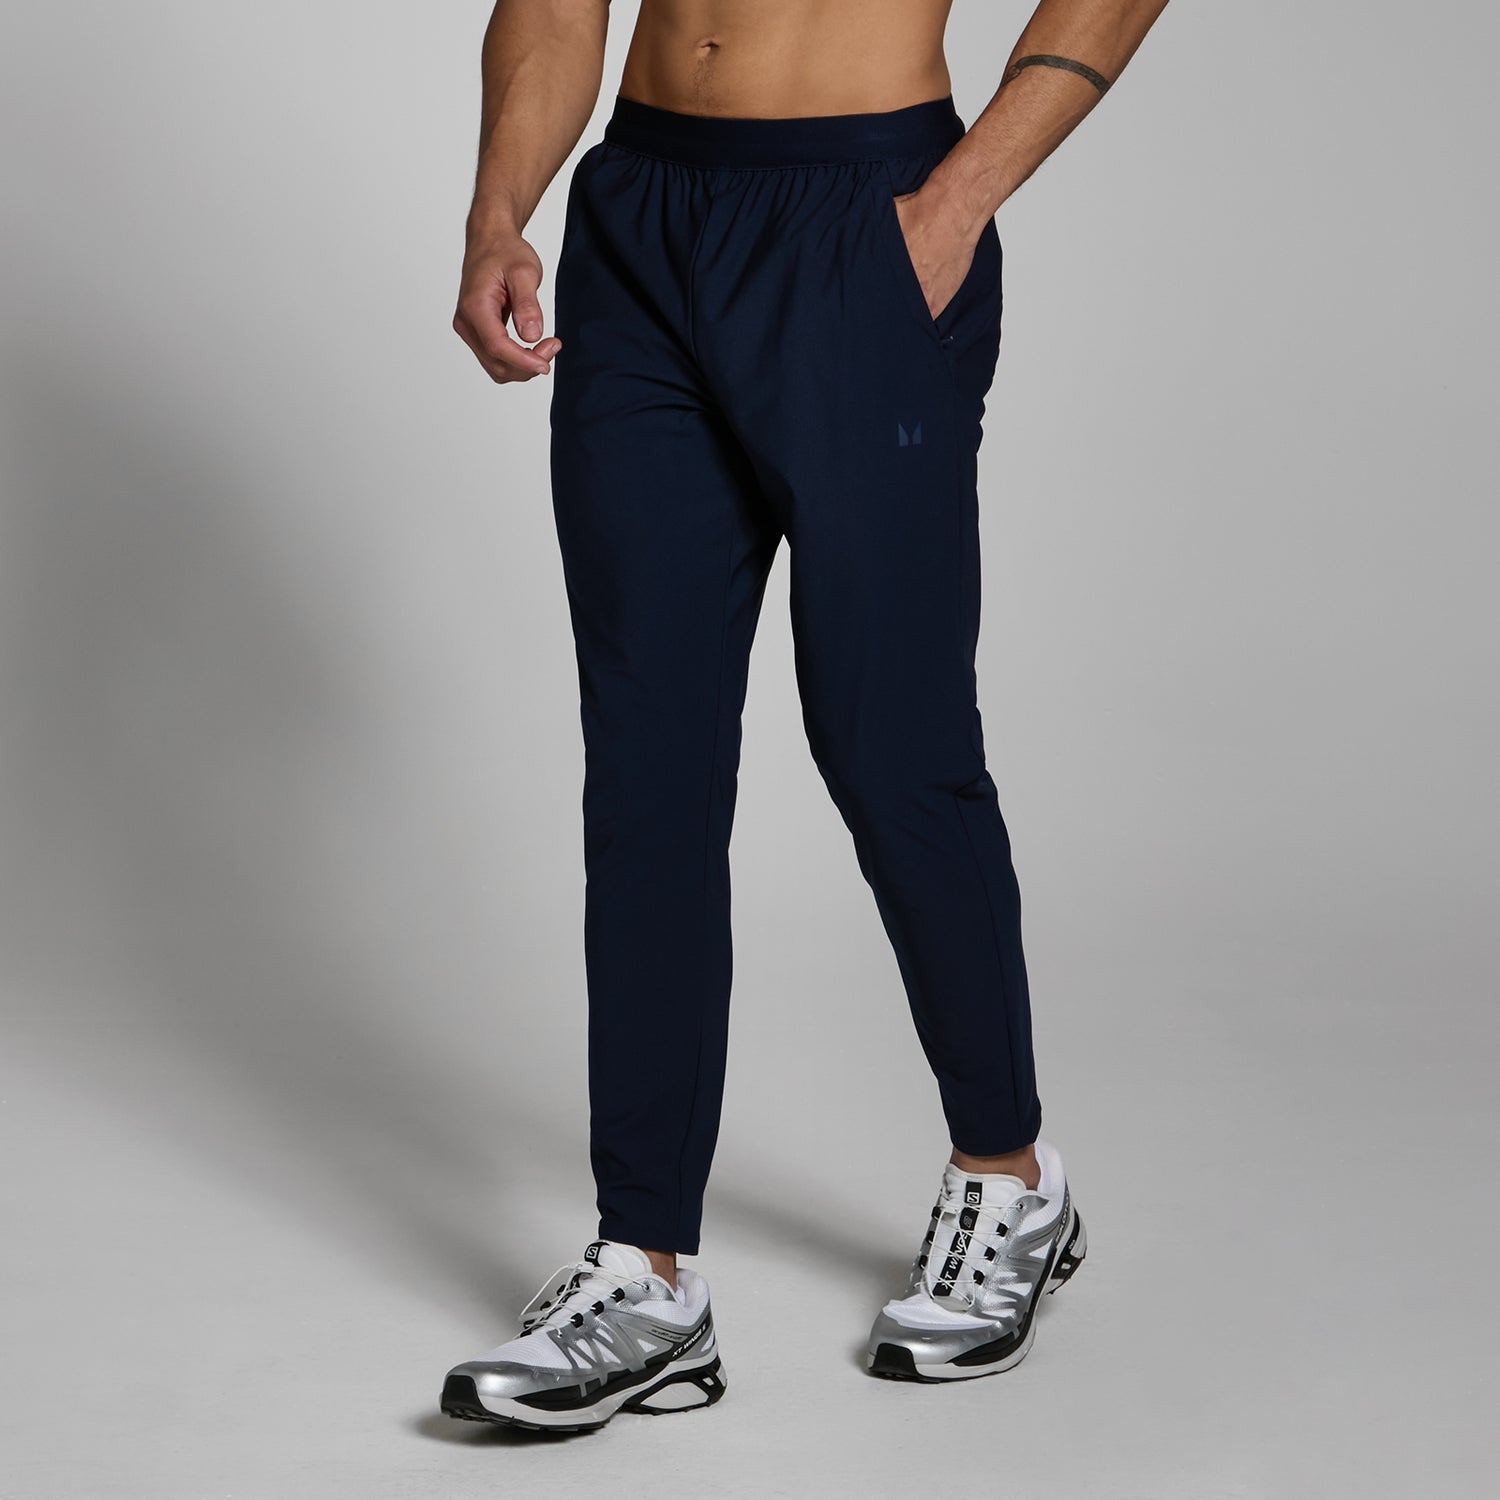 Pantalón deportivo tejido Lifestyle para hombre de MP - Azul marino intenso - XS